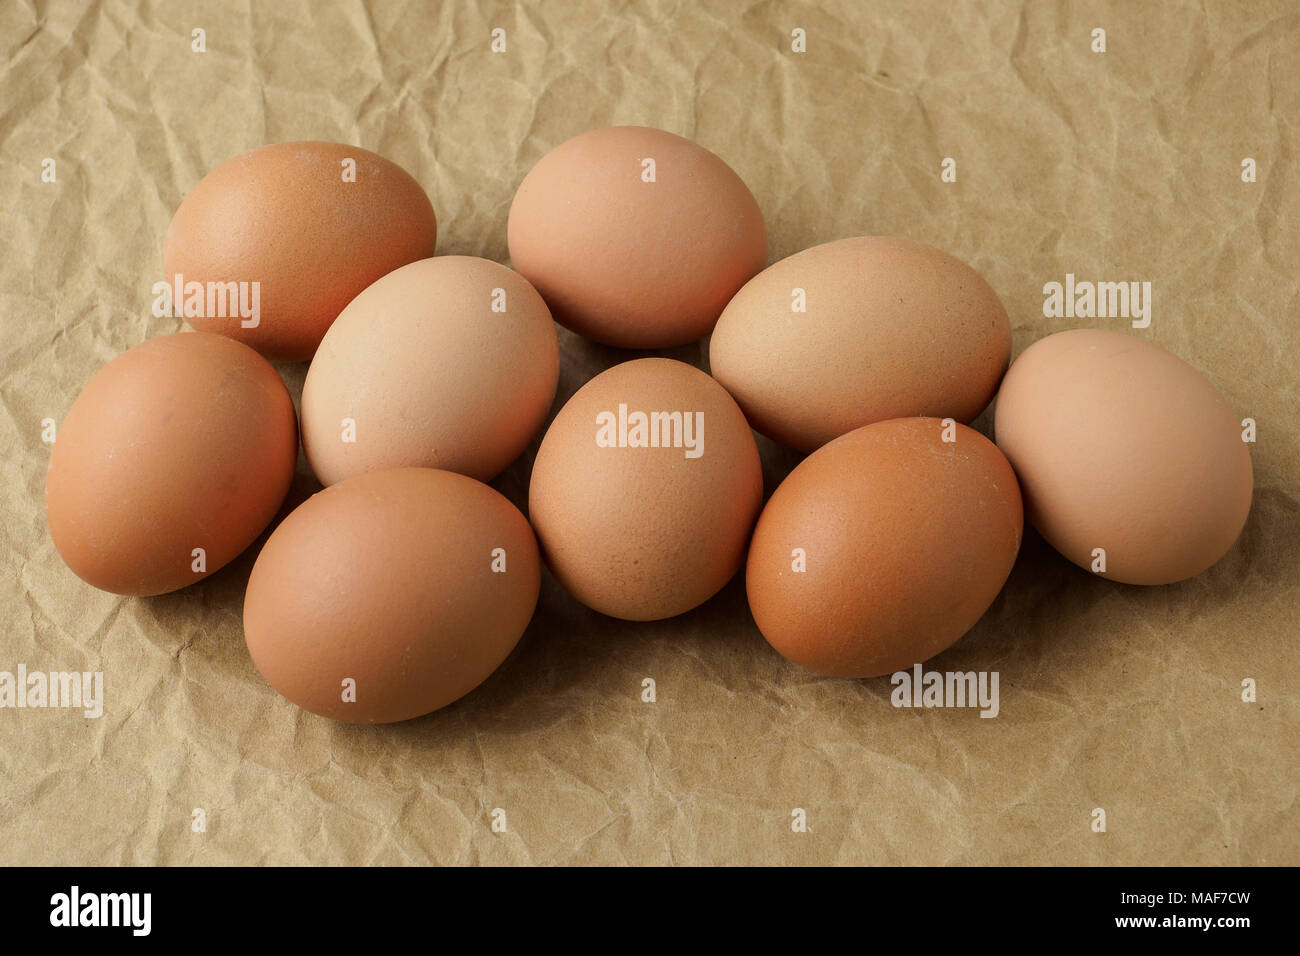 Los huevos frescos sobre papel de embalaje marrón. Los productos dietéticos. Los huevos frescos orgánicos. Foto de stock